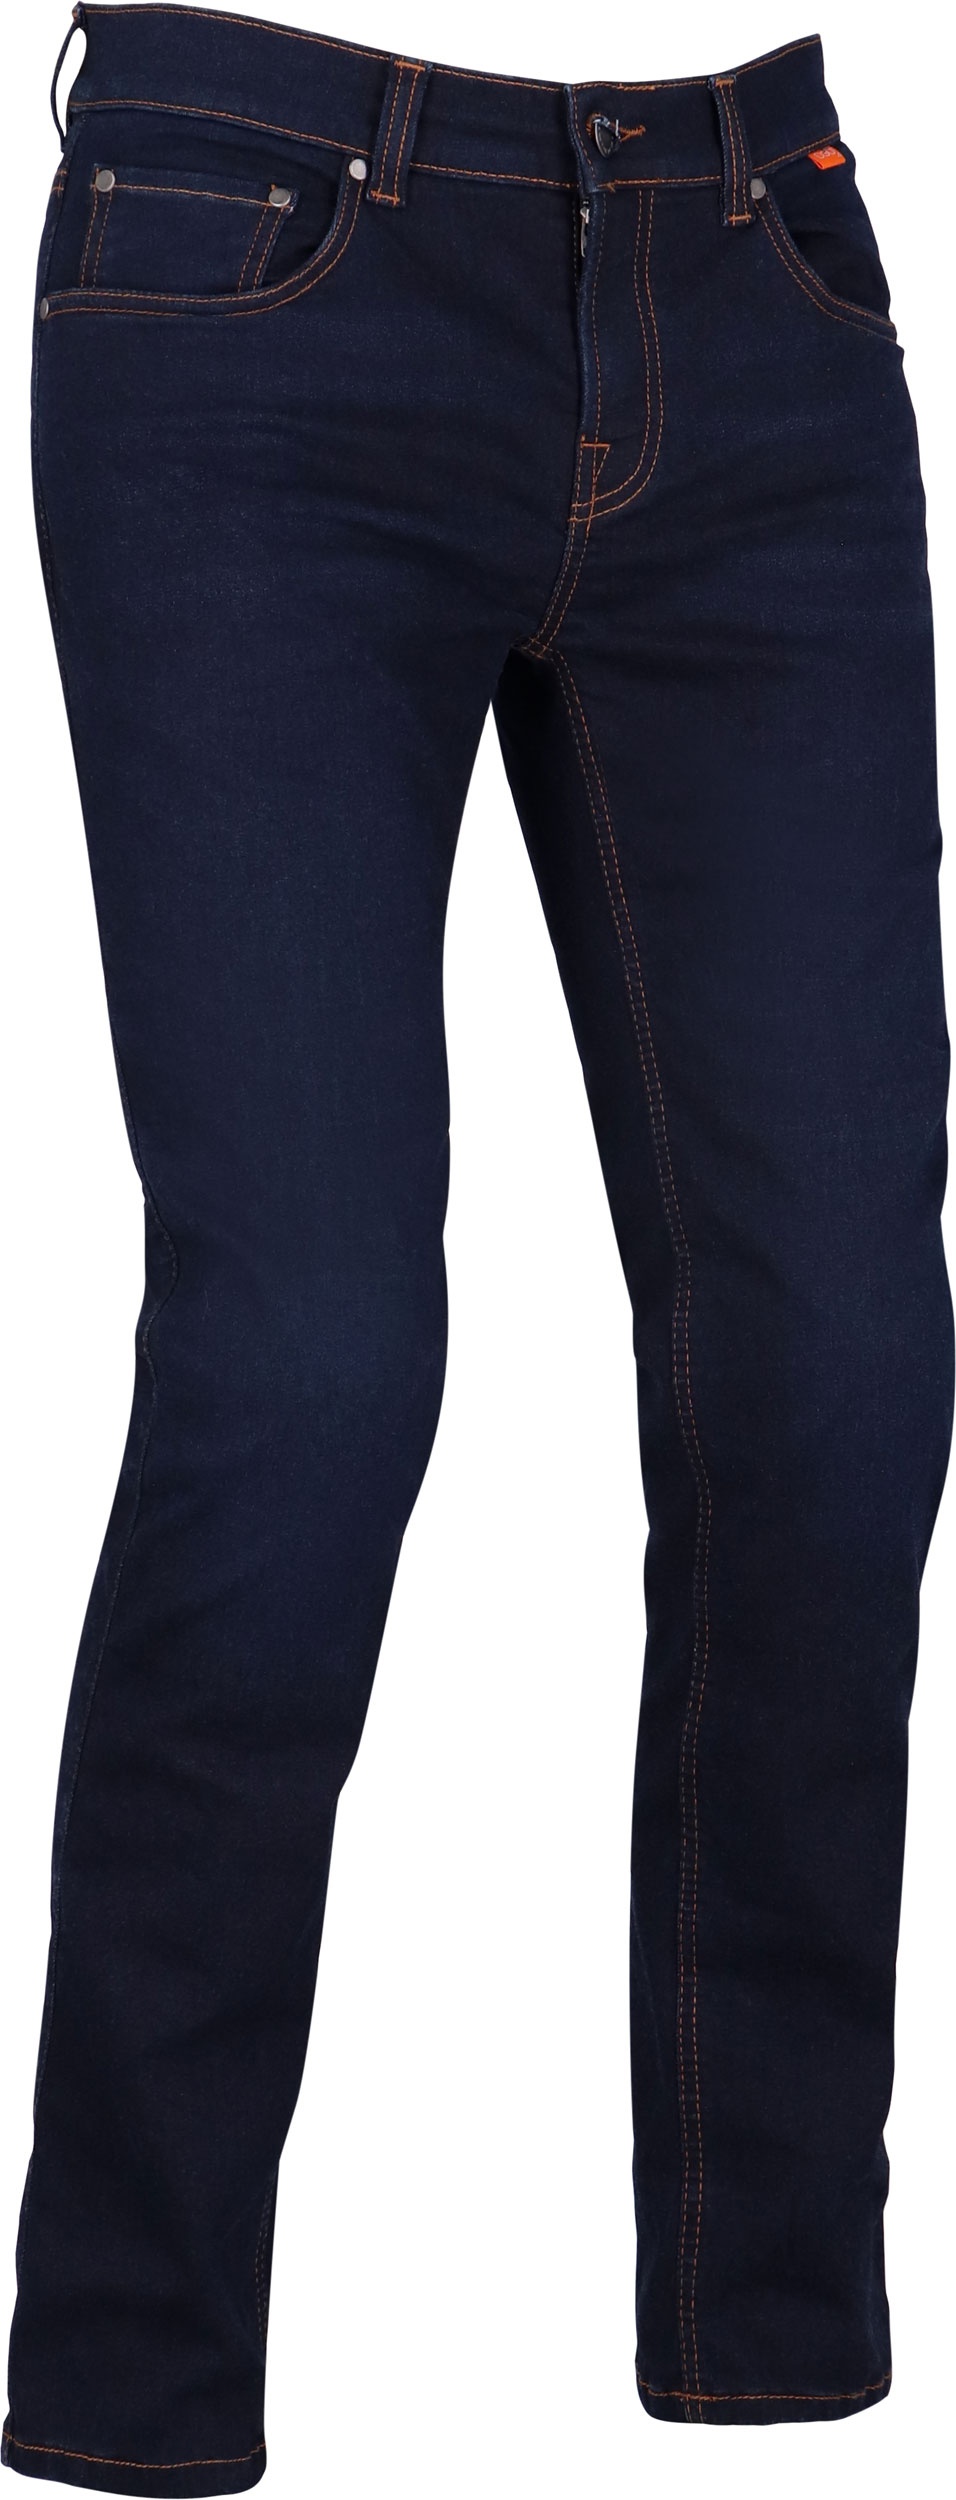 Richa Original 2 Slim-Fit, jeans - Bleu Foncé - Court 38